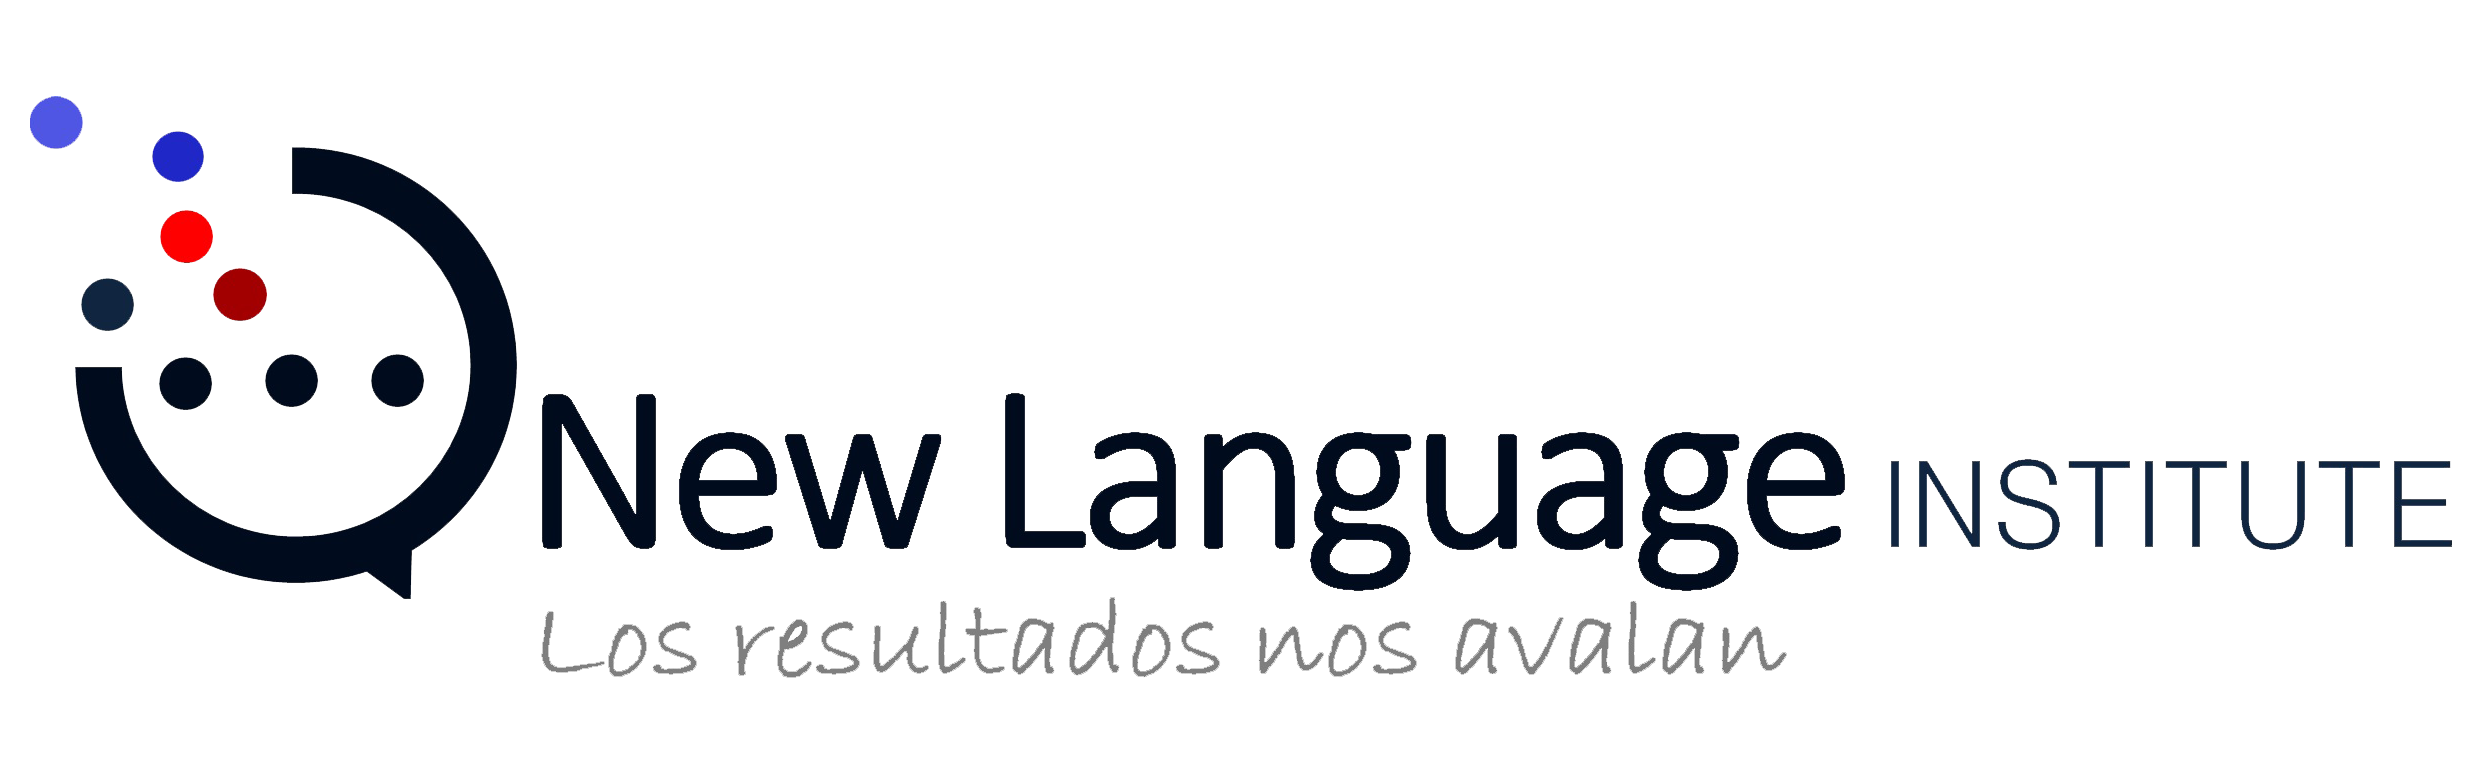 NLI Sevilla - New Language Institute